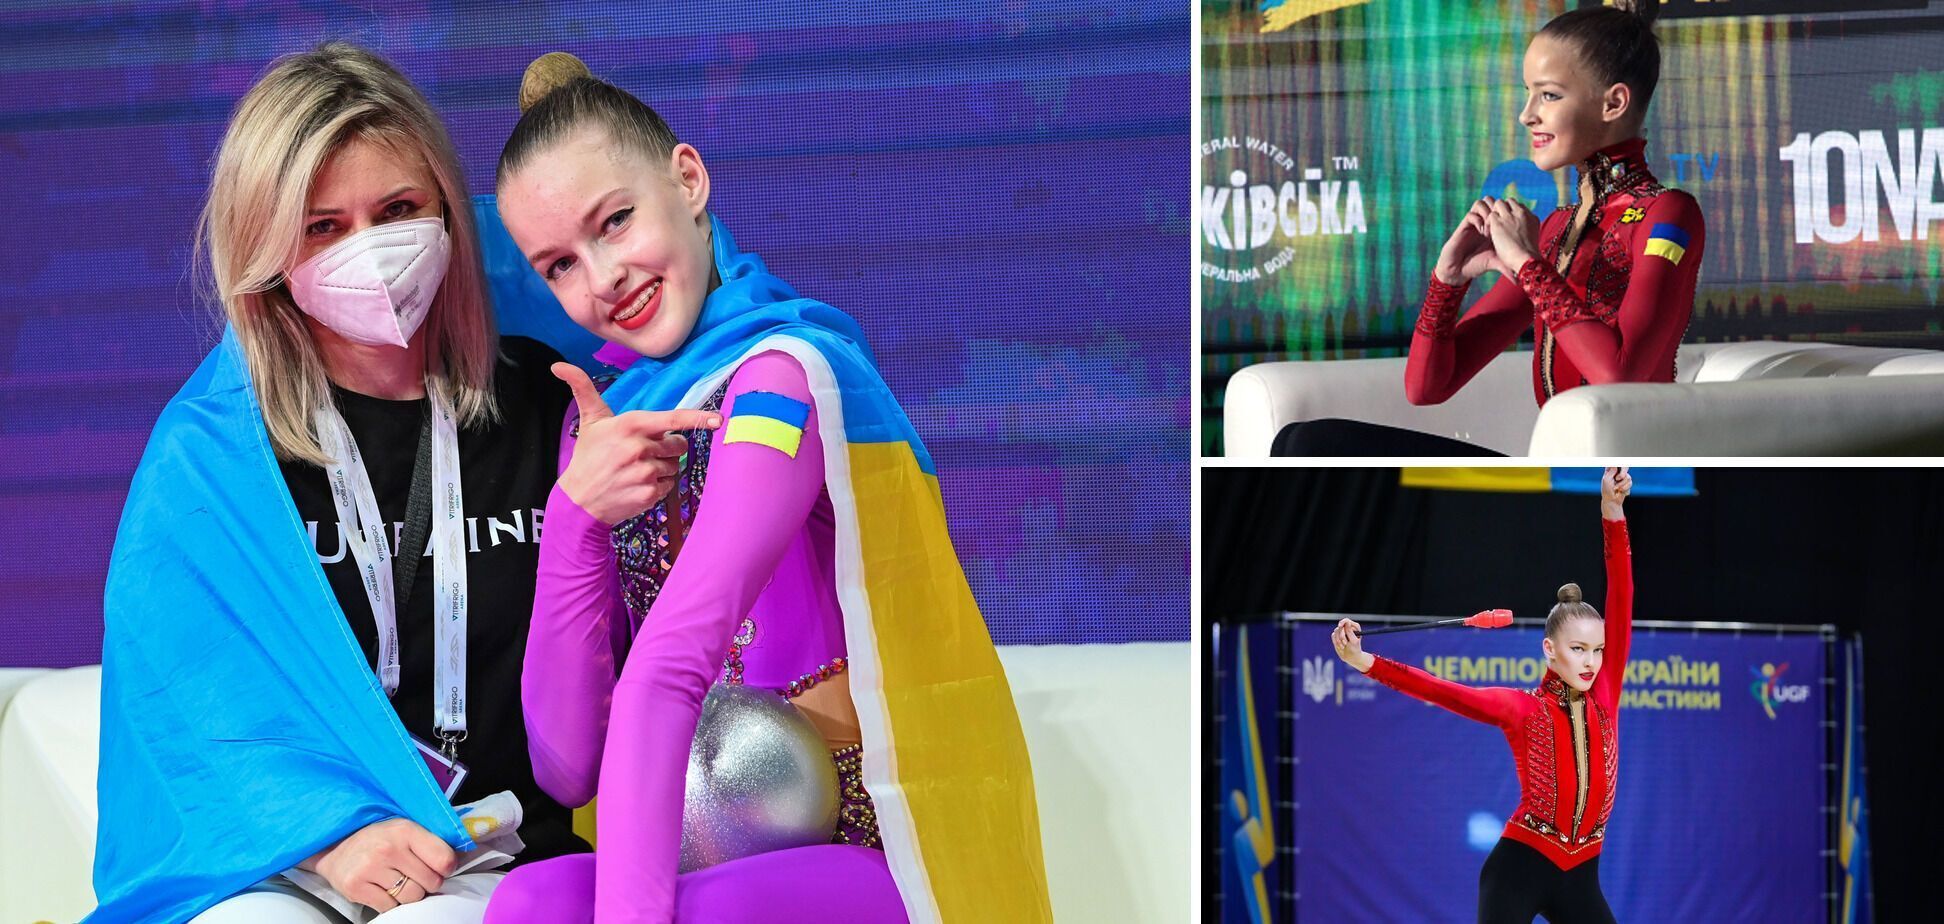 7-разова чемпіонка України пояснила свою відмову від українського громадянства, згадавши Бахмут